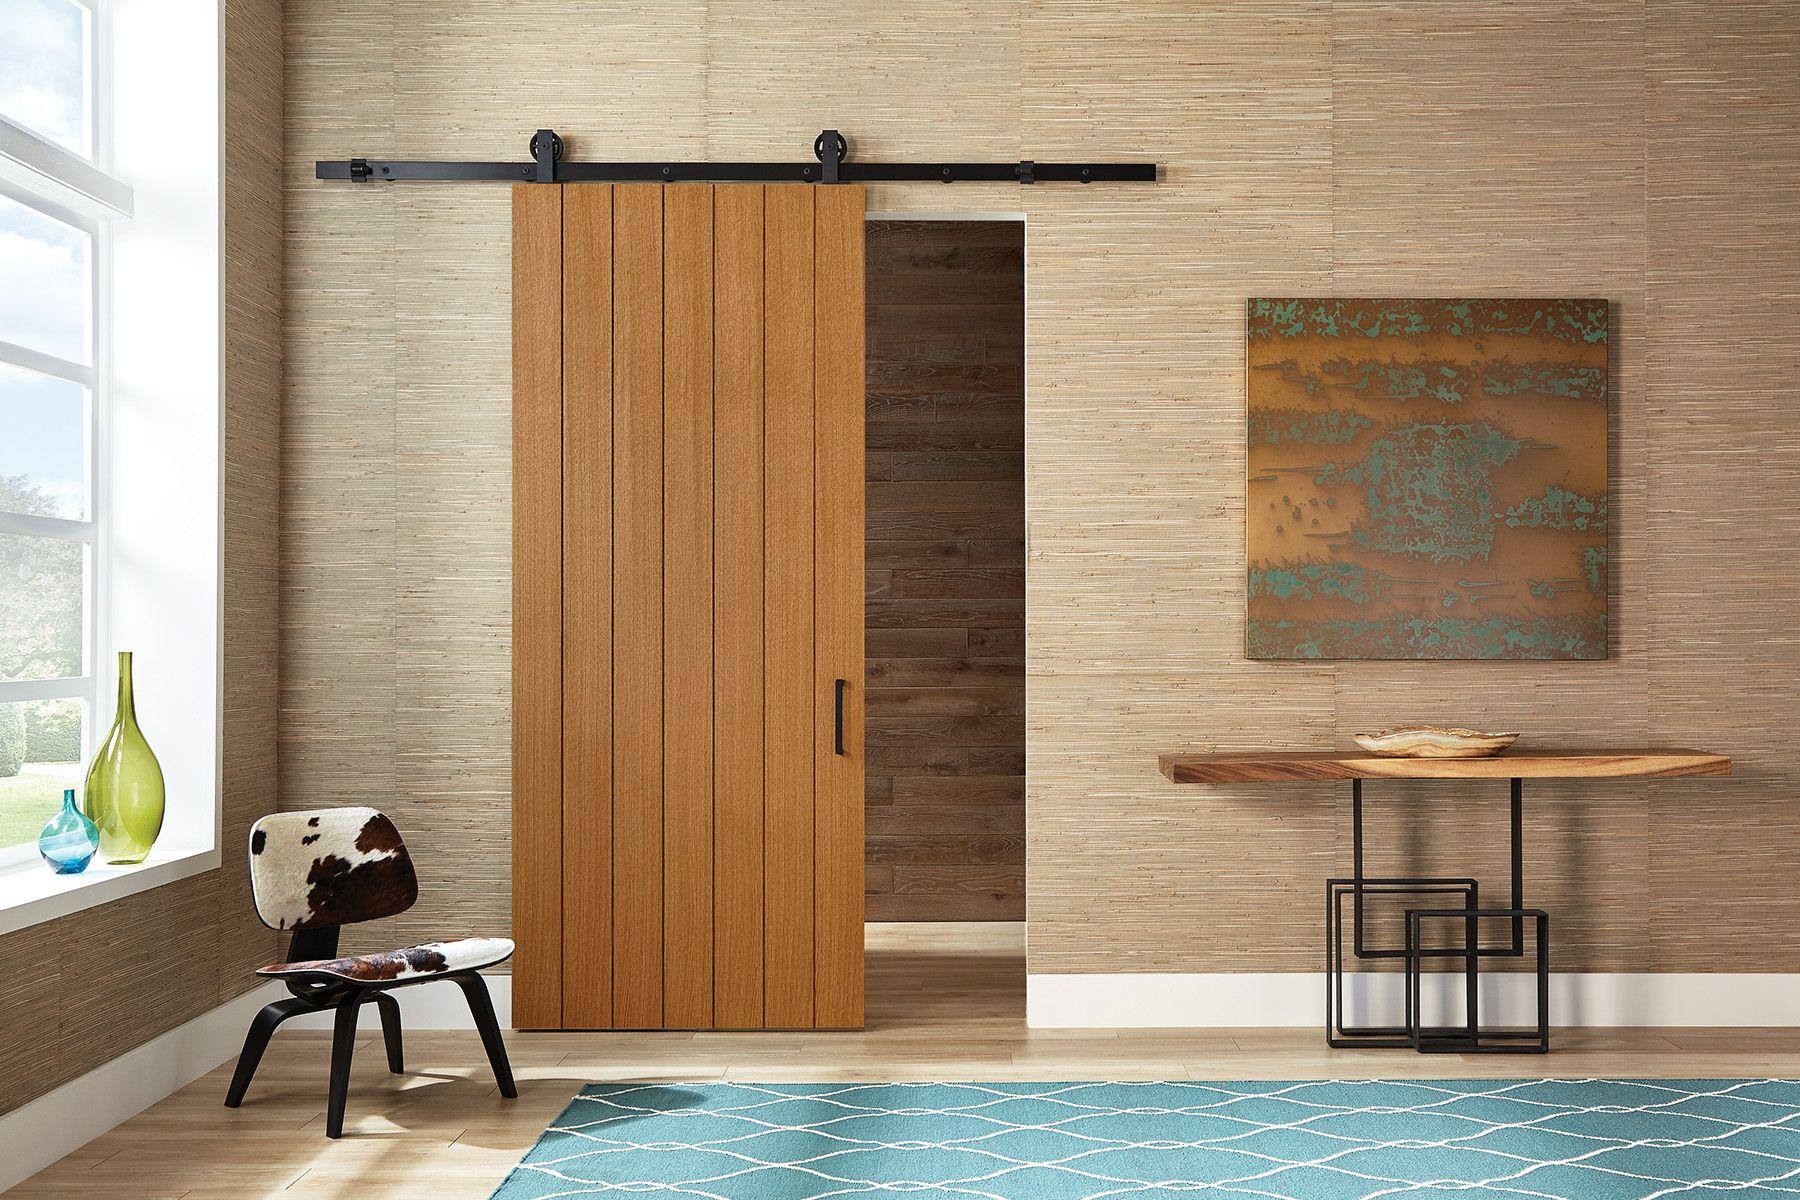 Plank Style Interior Doors: Vertical Plank Interior Wood Doors